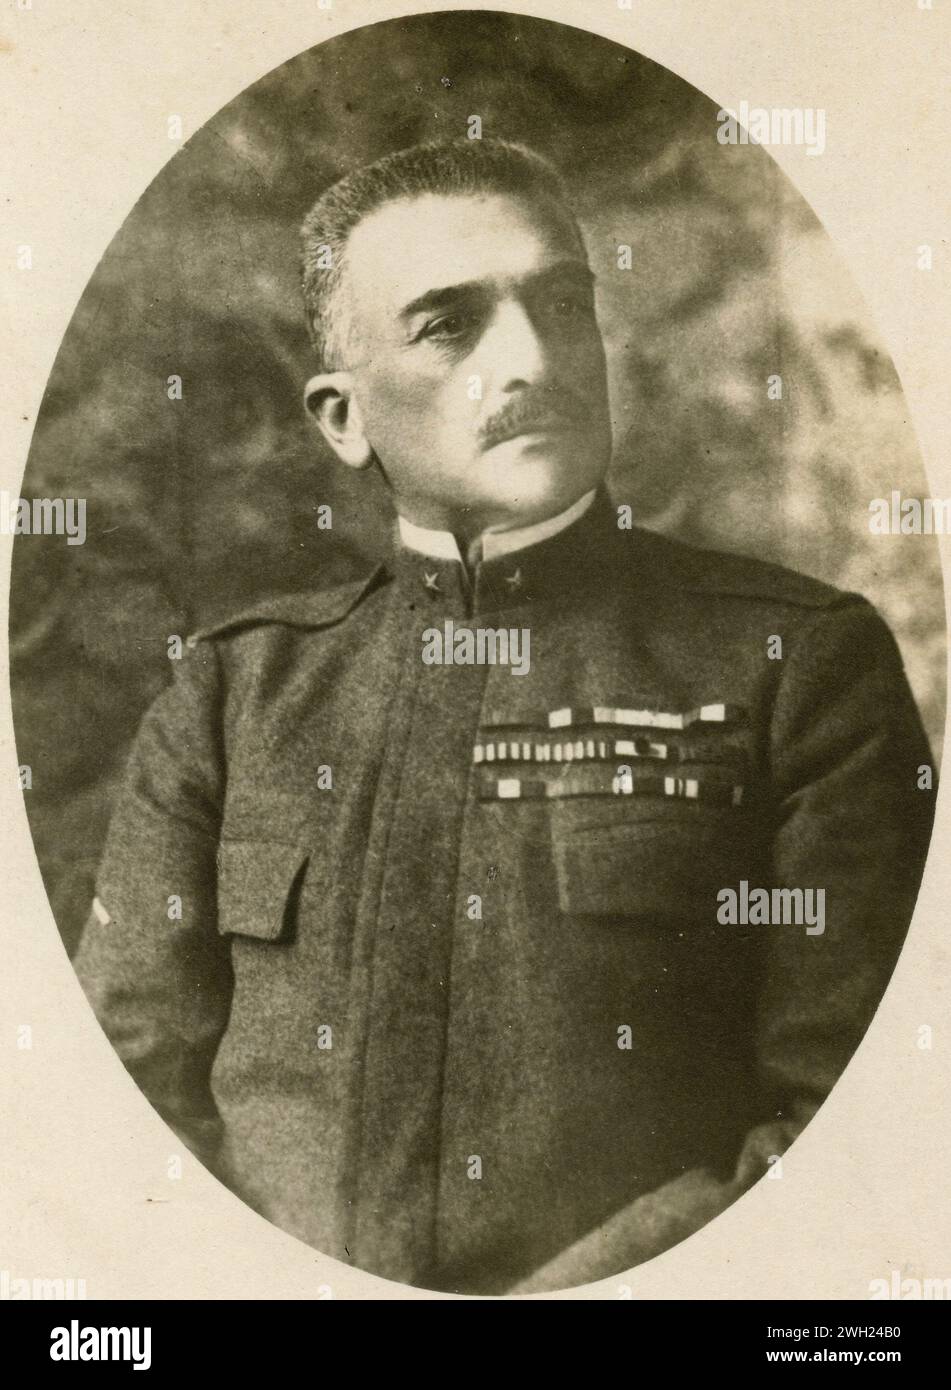 Porträt des italienischen Generals und Marschalls Armando Diaz, 1910er Jahre Stockfoto